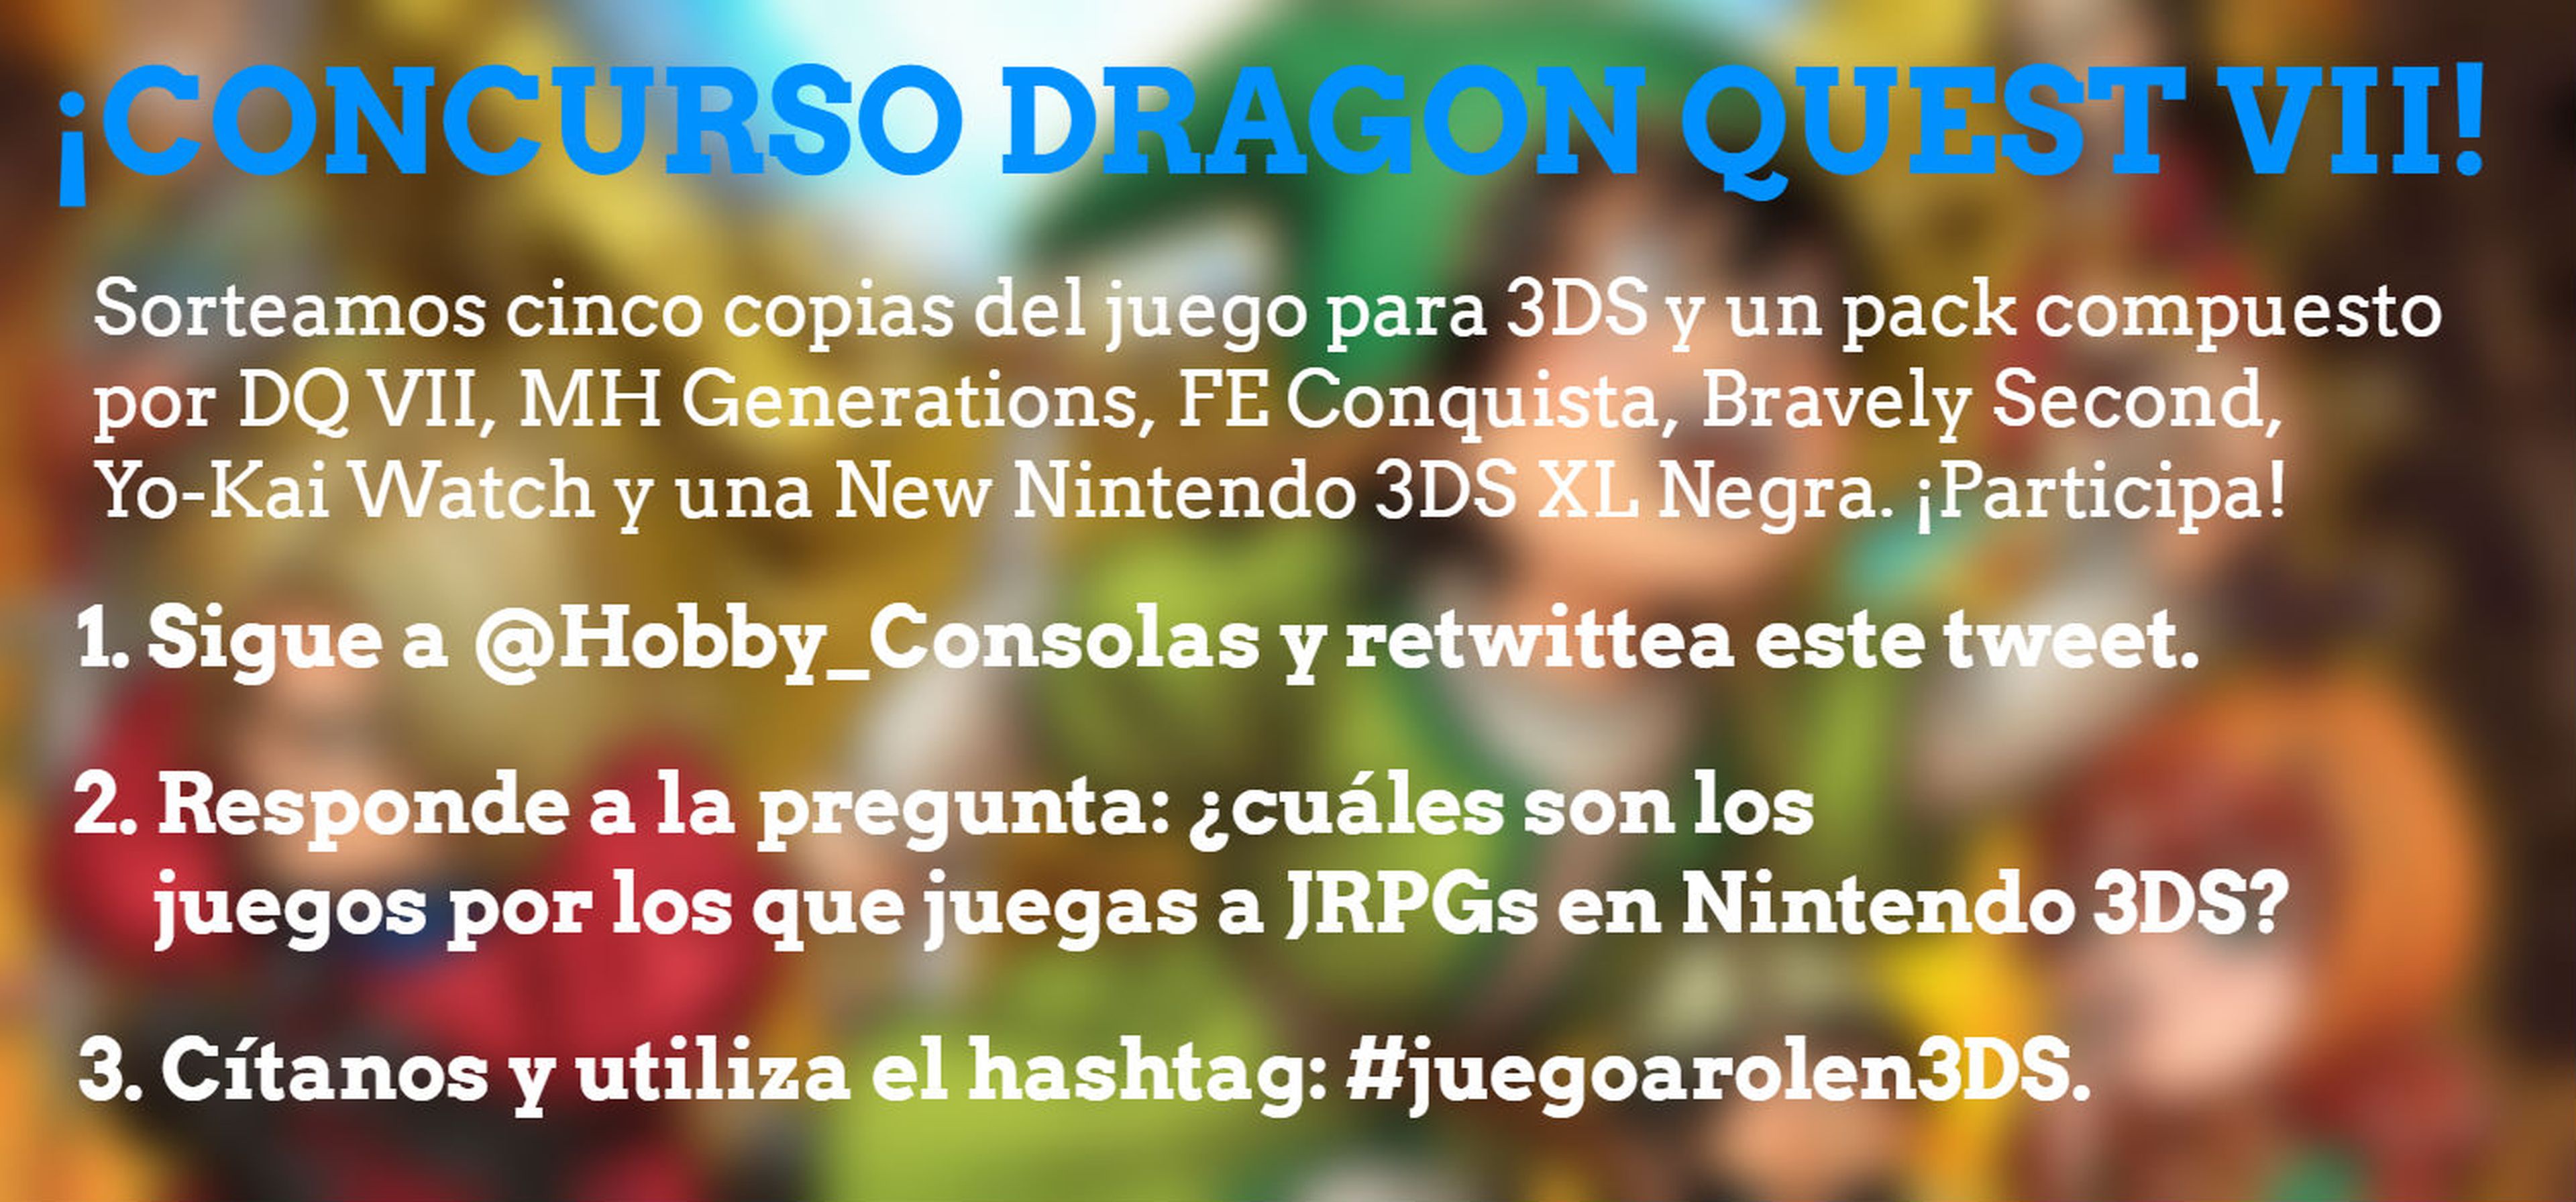 Concurso Dragon Quest VII